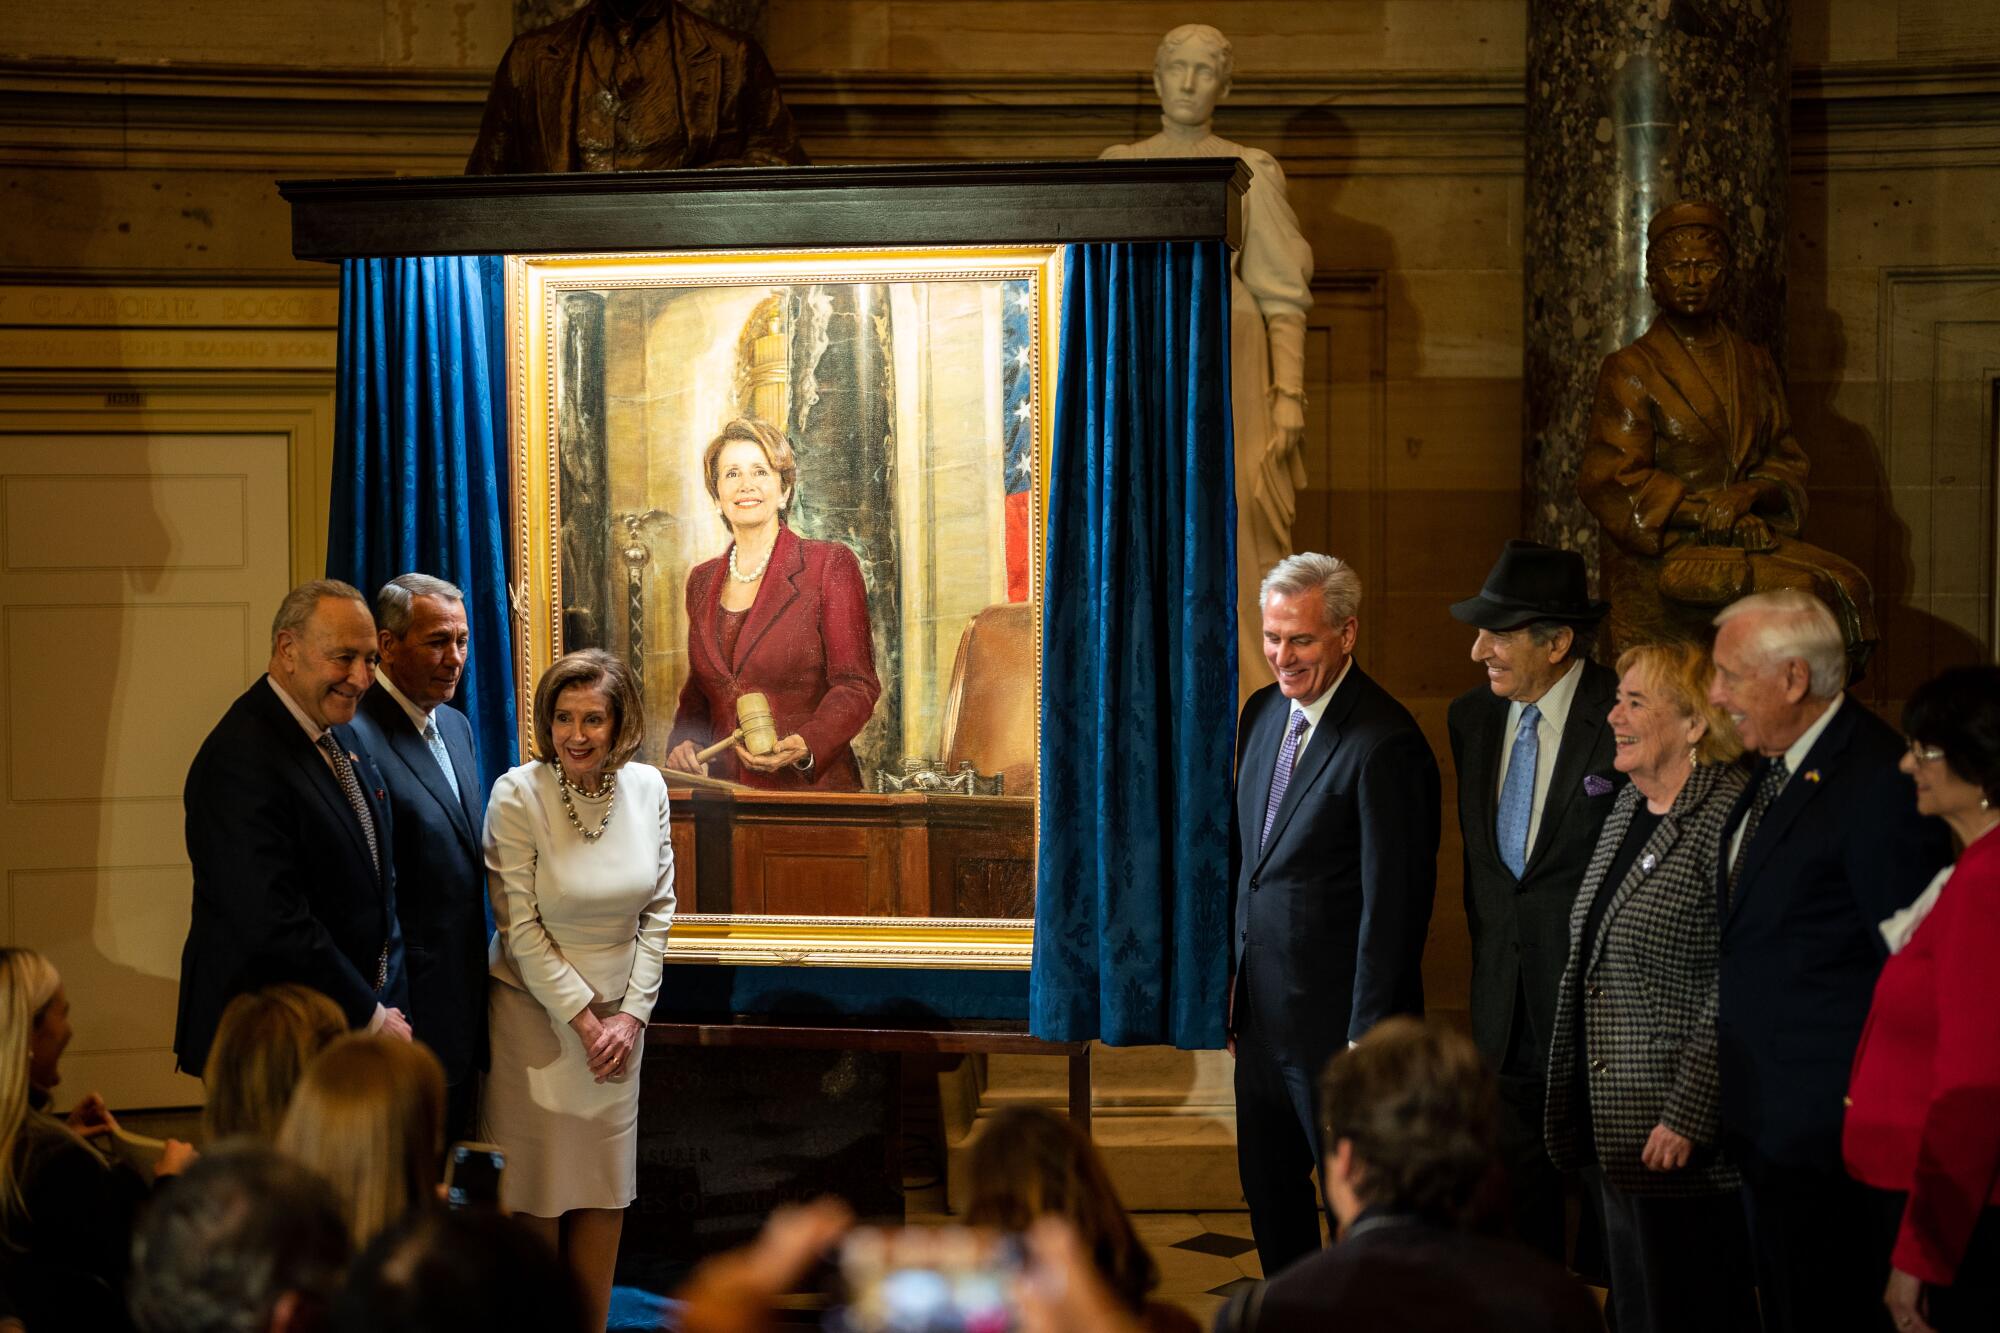 Die Sprecherin des Repräsentantenhauses, Nancy Pelosi, posiert mit anderen für Fotos in der Nähe eines Gemäldes von ihr in einem reich verzierten Raum.